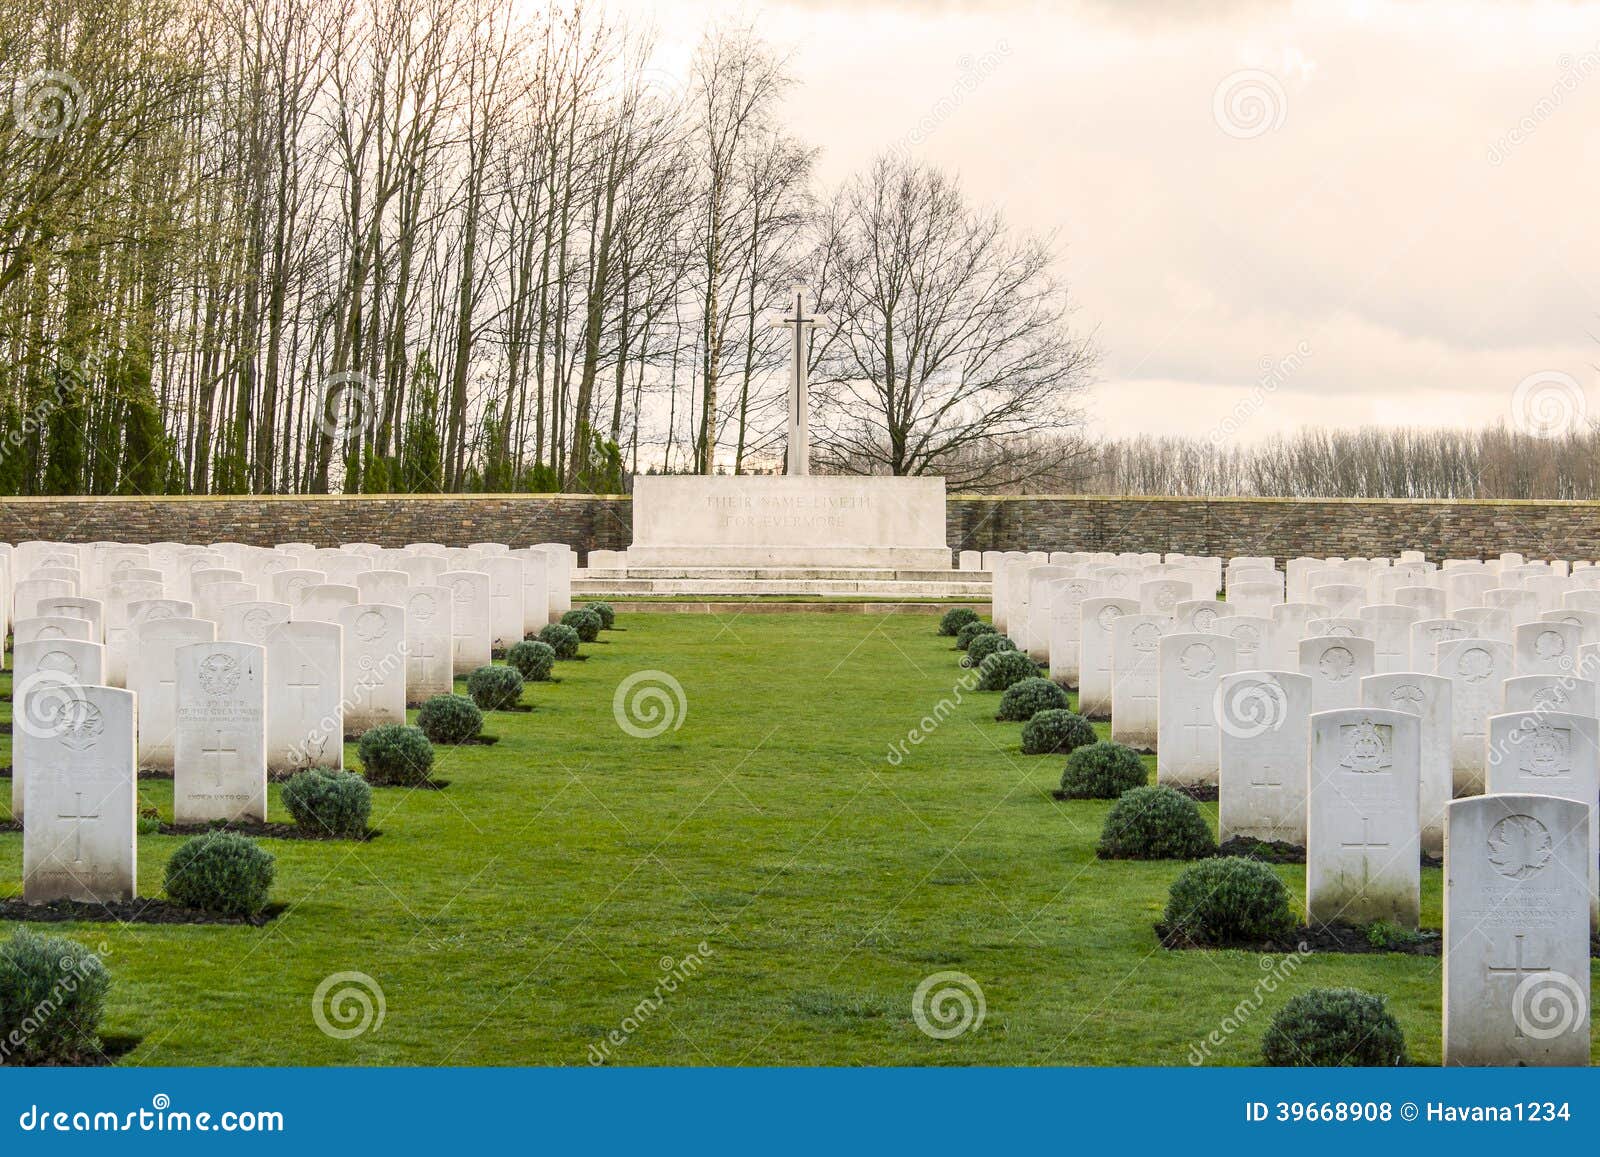 Солдатское кладбище